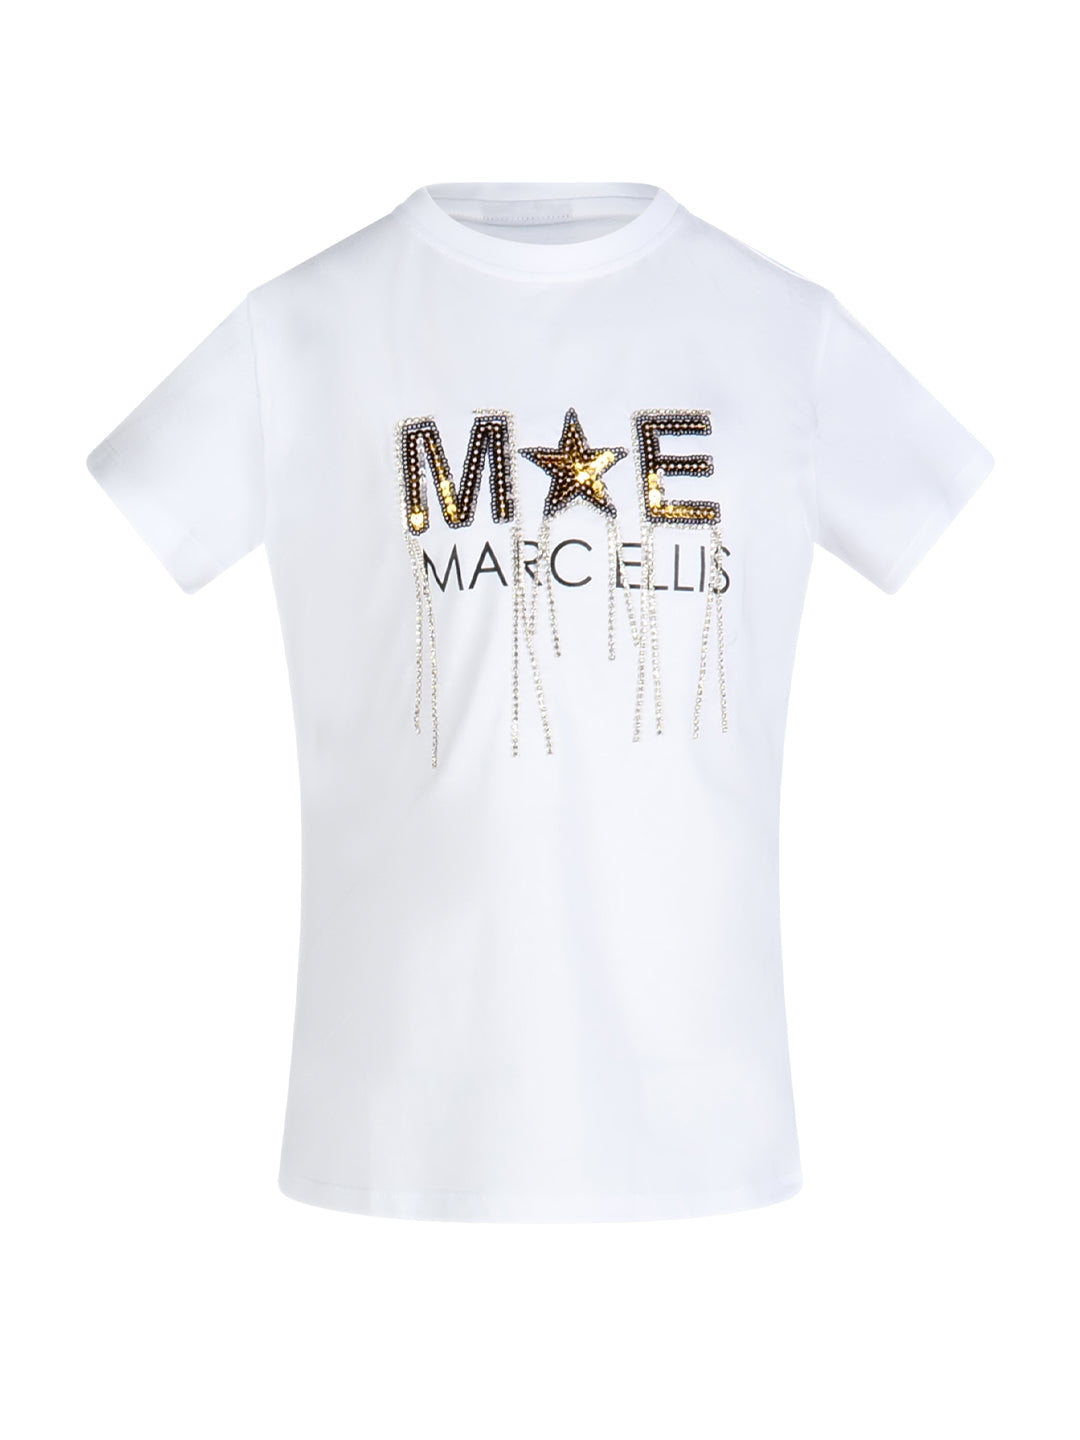 Marc Ellis t-shirt kids bianco con logo e strass